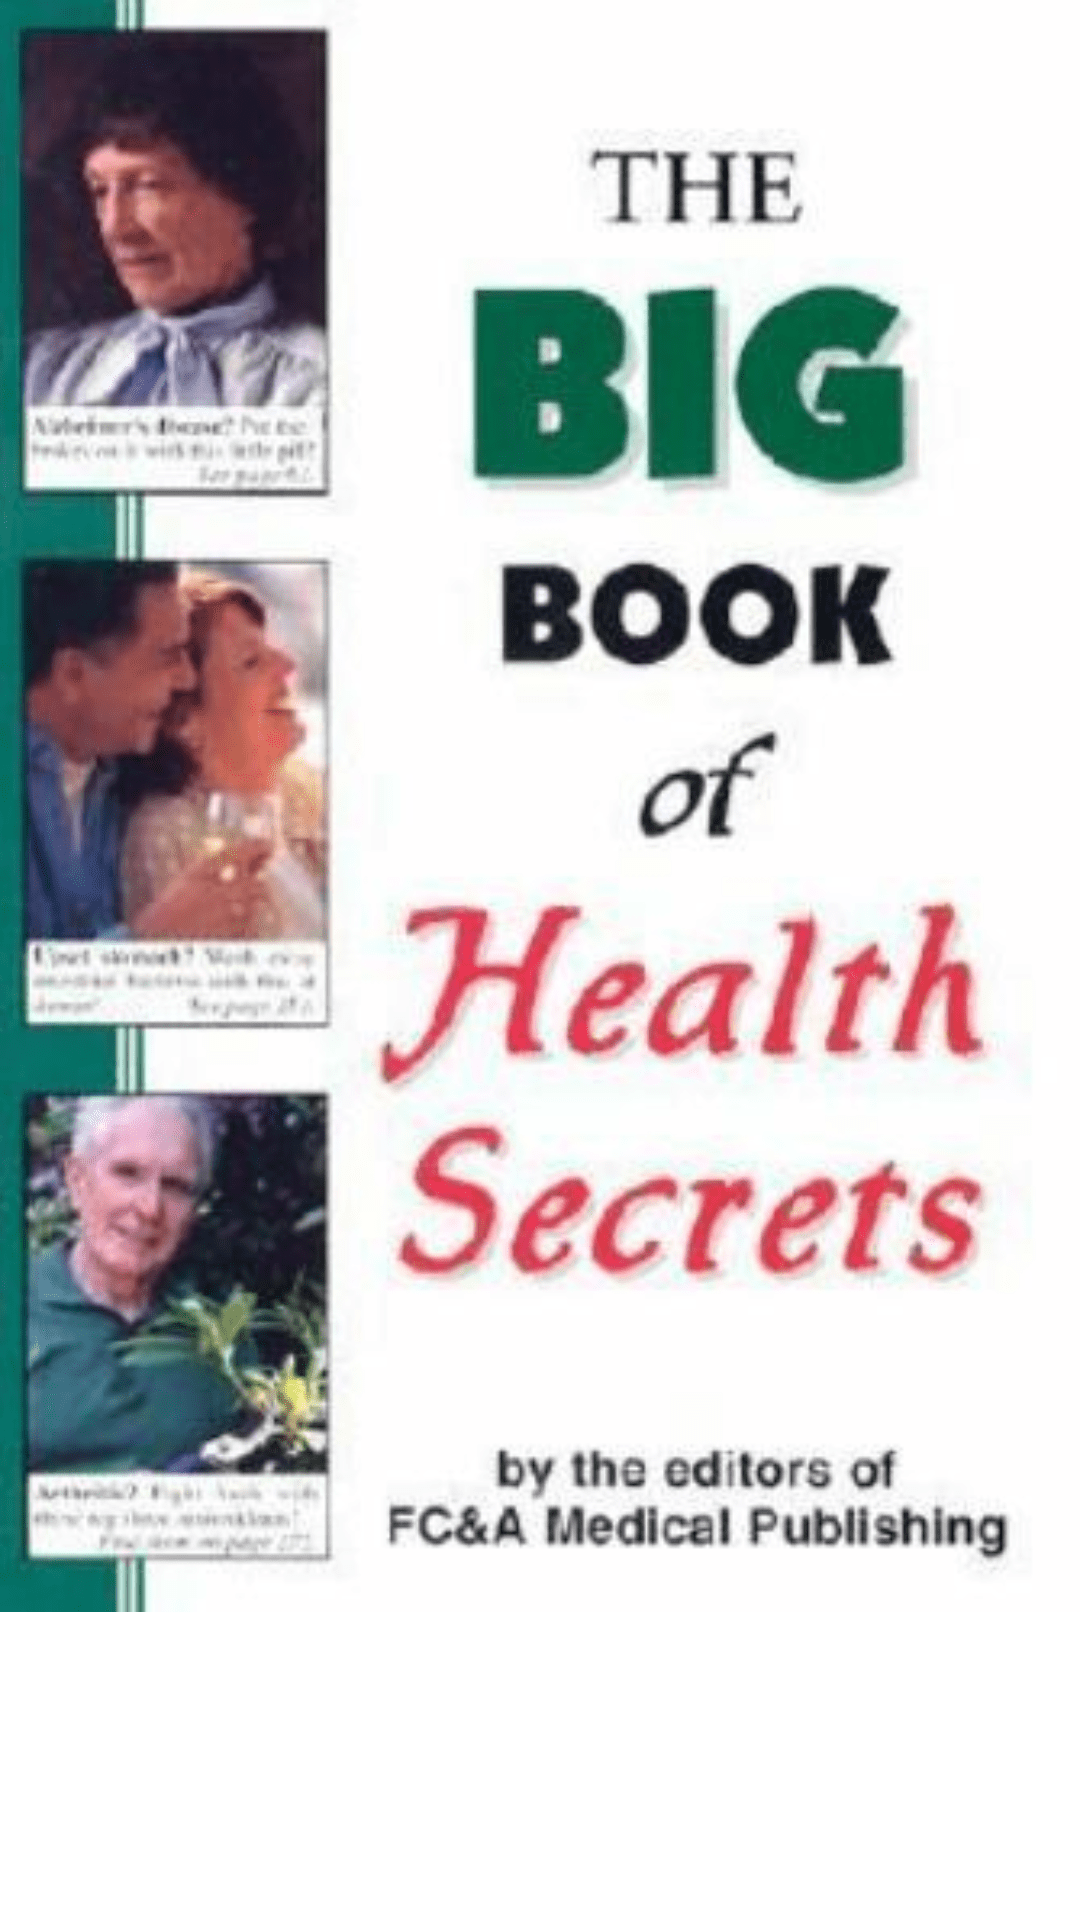 The Big Book of Health Secrets